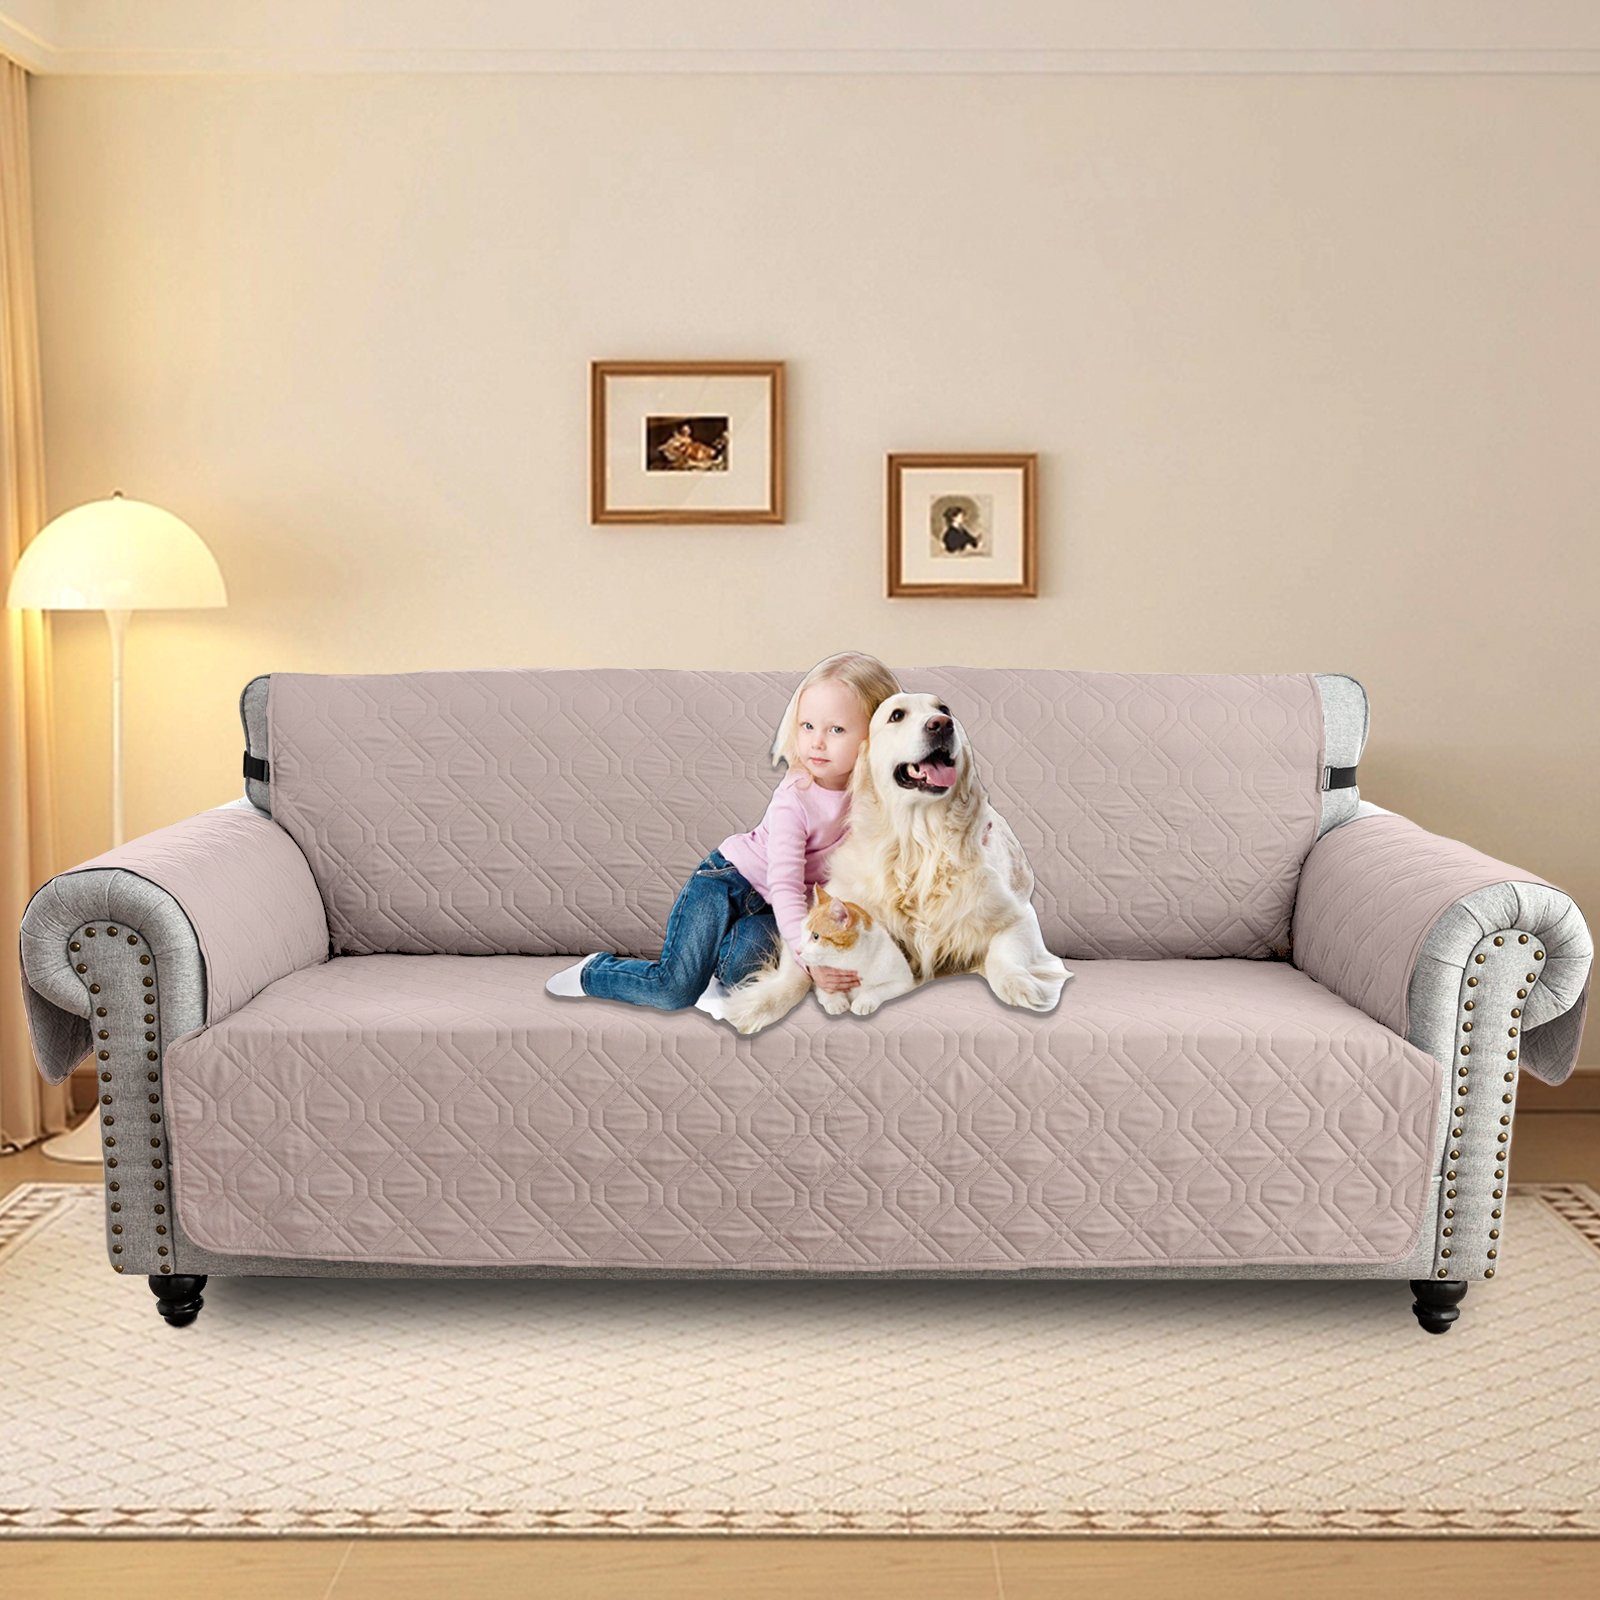 Sofabezug Wasserdicht Gesteppter Haustier Hunde Couch Anti-Rutsch Schutz 1-3Sitz, Sunicol, Sesselschoner Sesselbezug Sofa Überwurf Armlehnenauflage Khaki